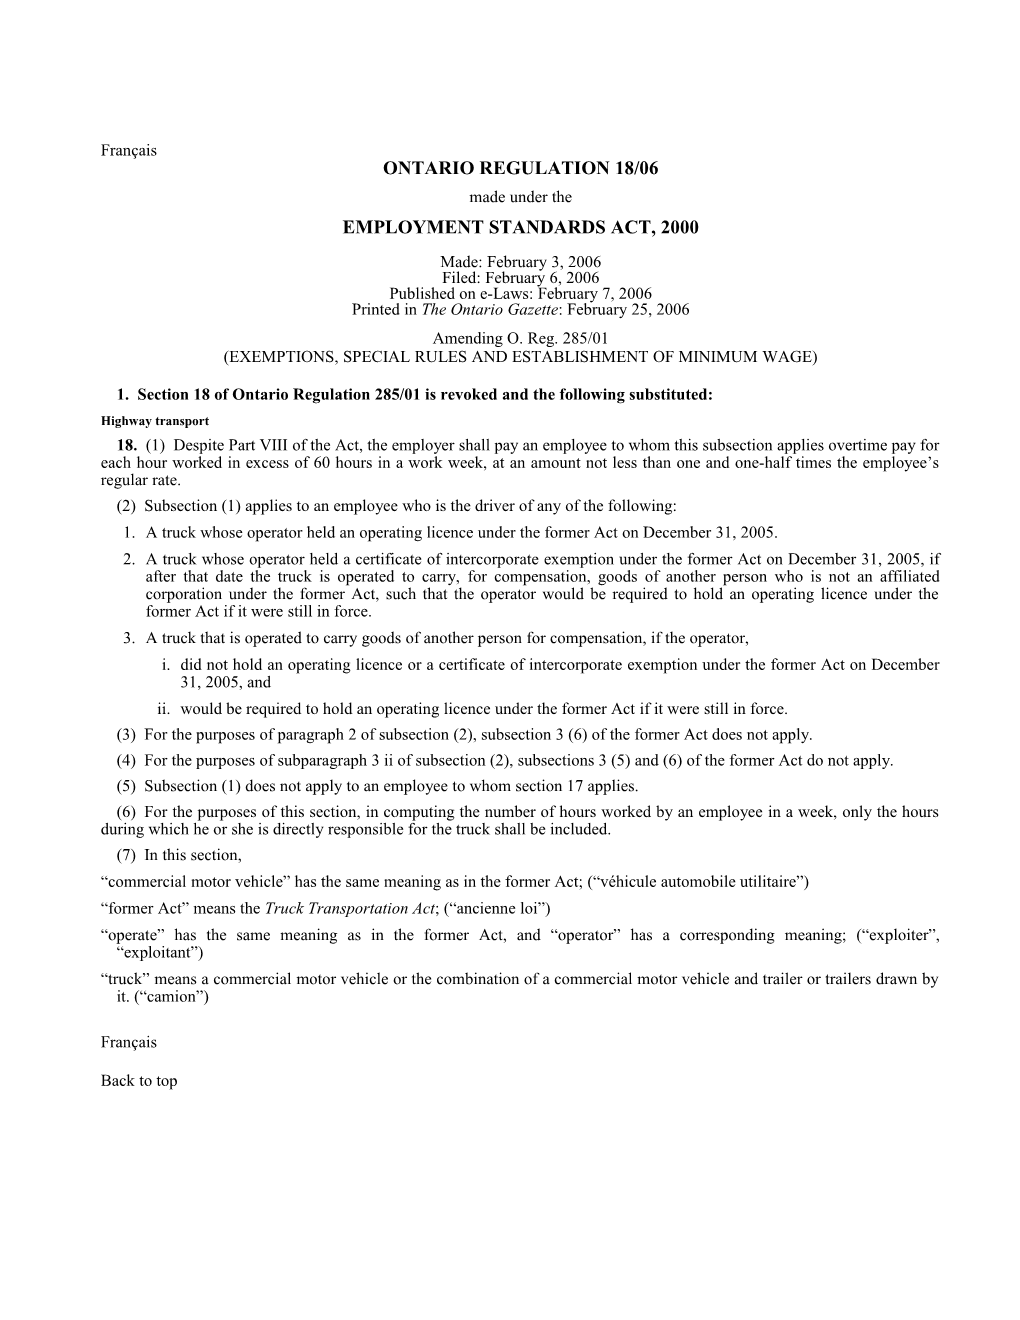 EMPLOYMENT STANDARDS ACT, 2000 - O. Reg. 18/06